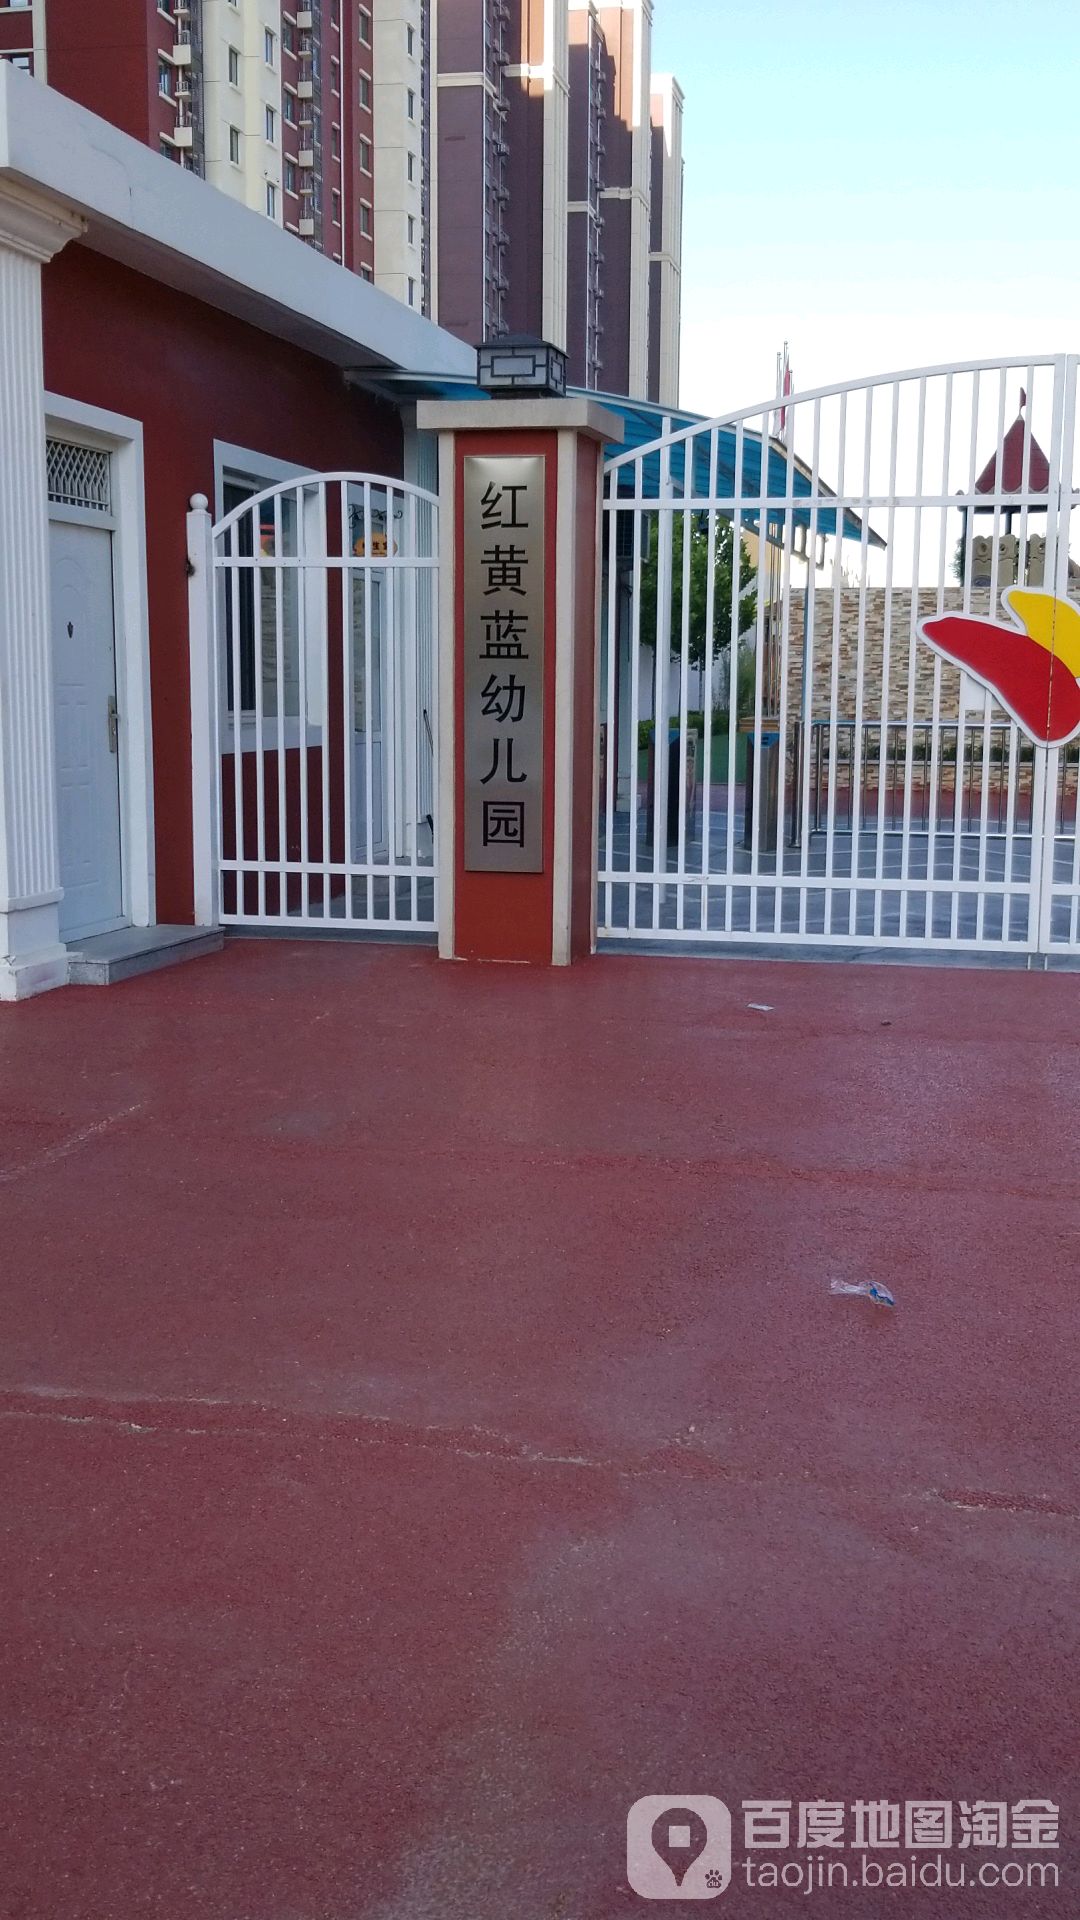 红黄蓝幼儿园-正门 地址:兴文街与团结西路交叉